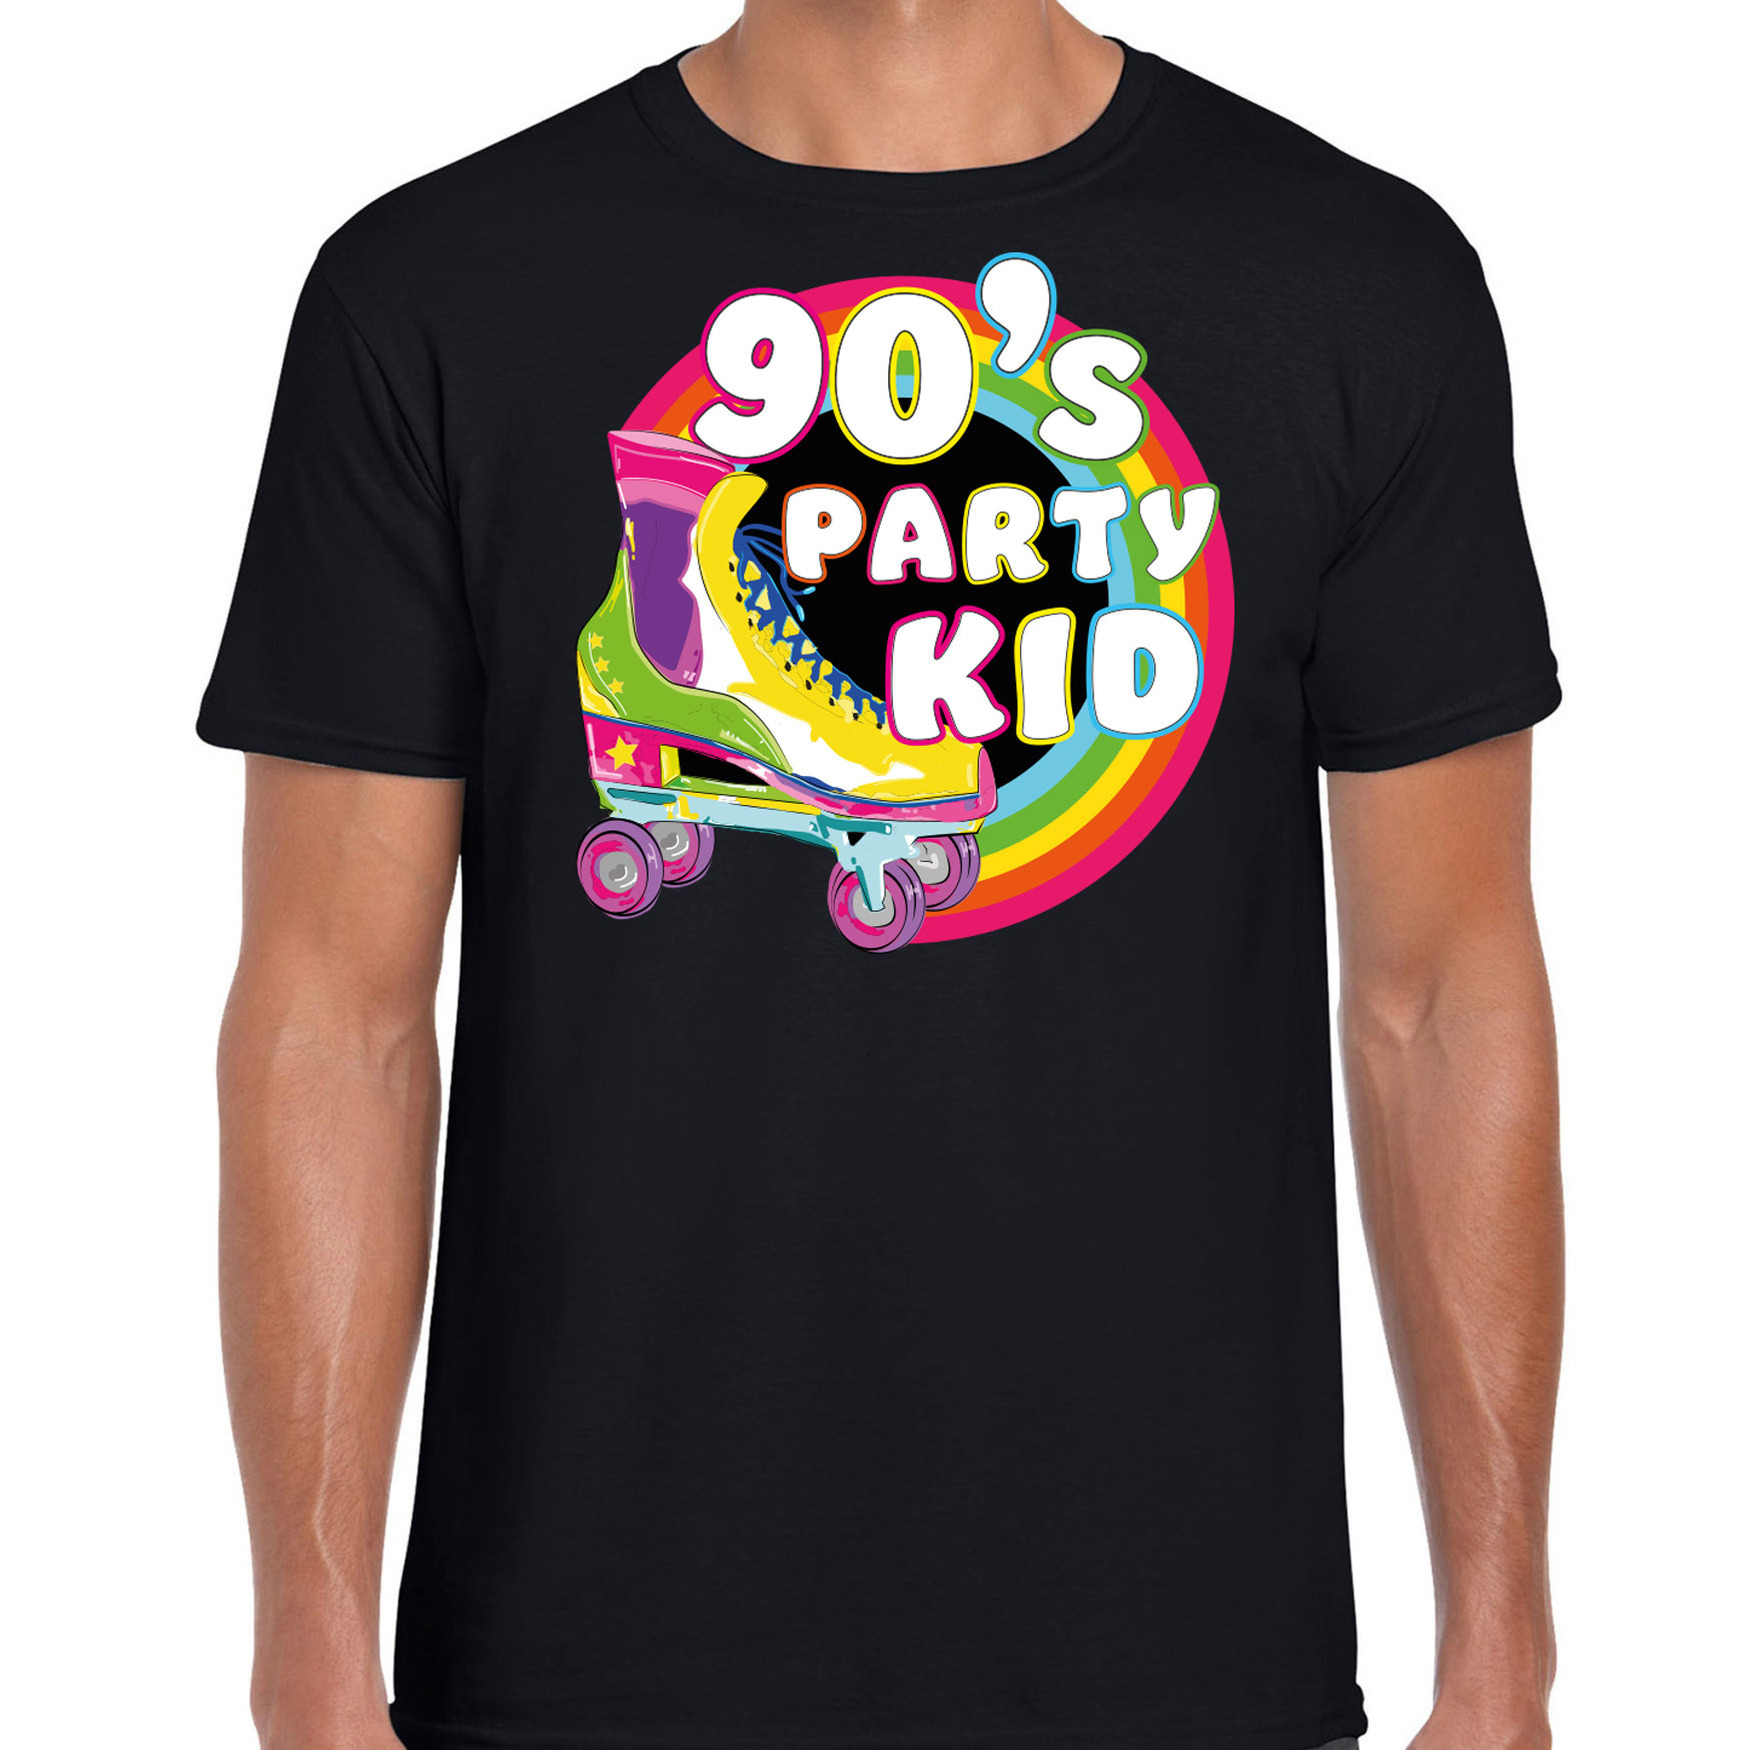 Nineties party verkleed t-shirt heren jaren 90 feest outfit 90s party kid zwart